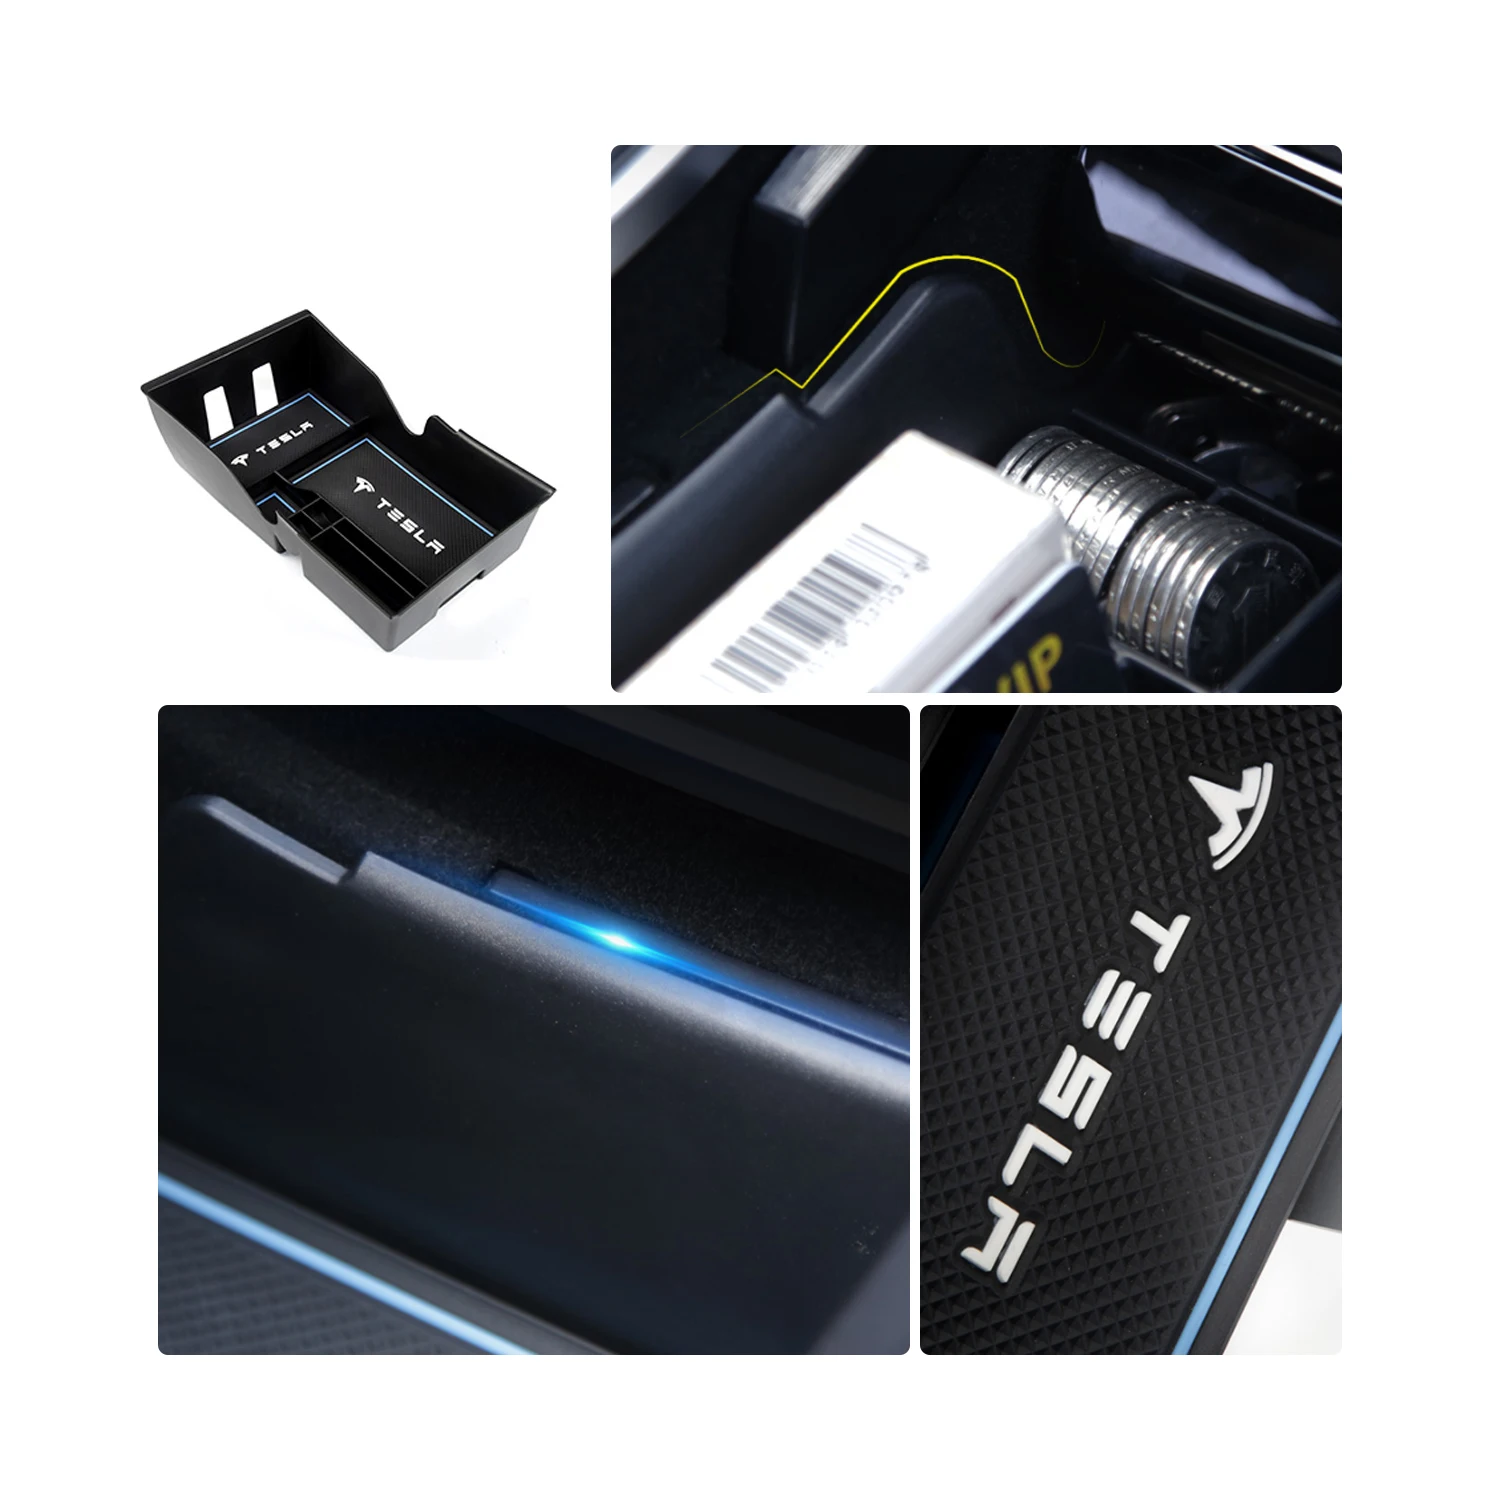 RUIYA ящик для хранения в подлокотнике автомобиля для Tesla модель 3 центральный ящик для хранения Противоскользящий резиновый ящик для укладки авто аксессуары для интерьера